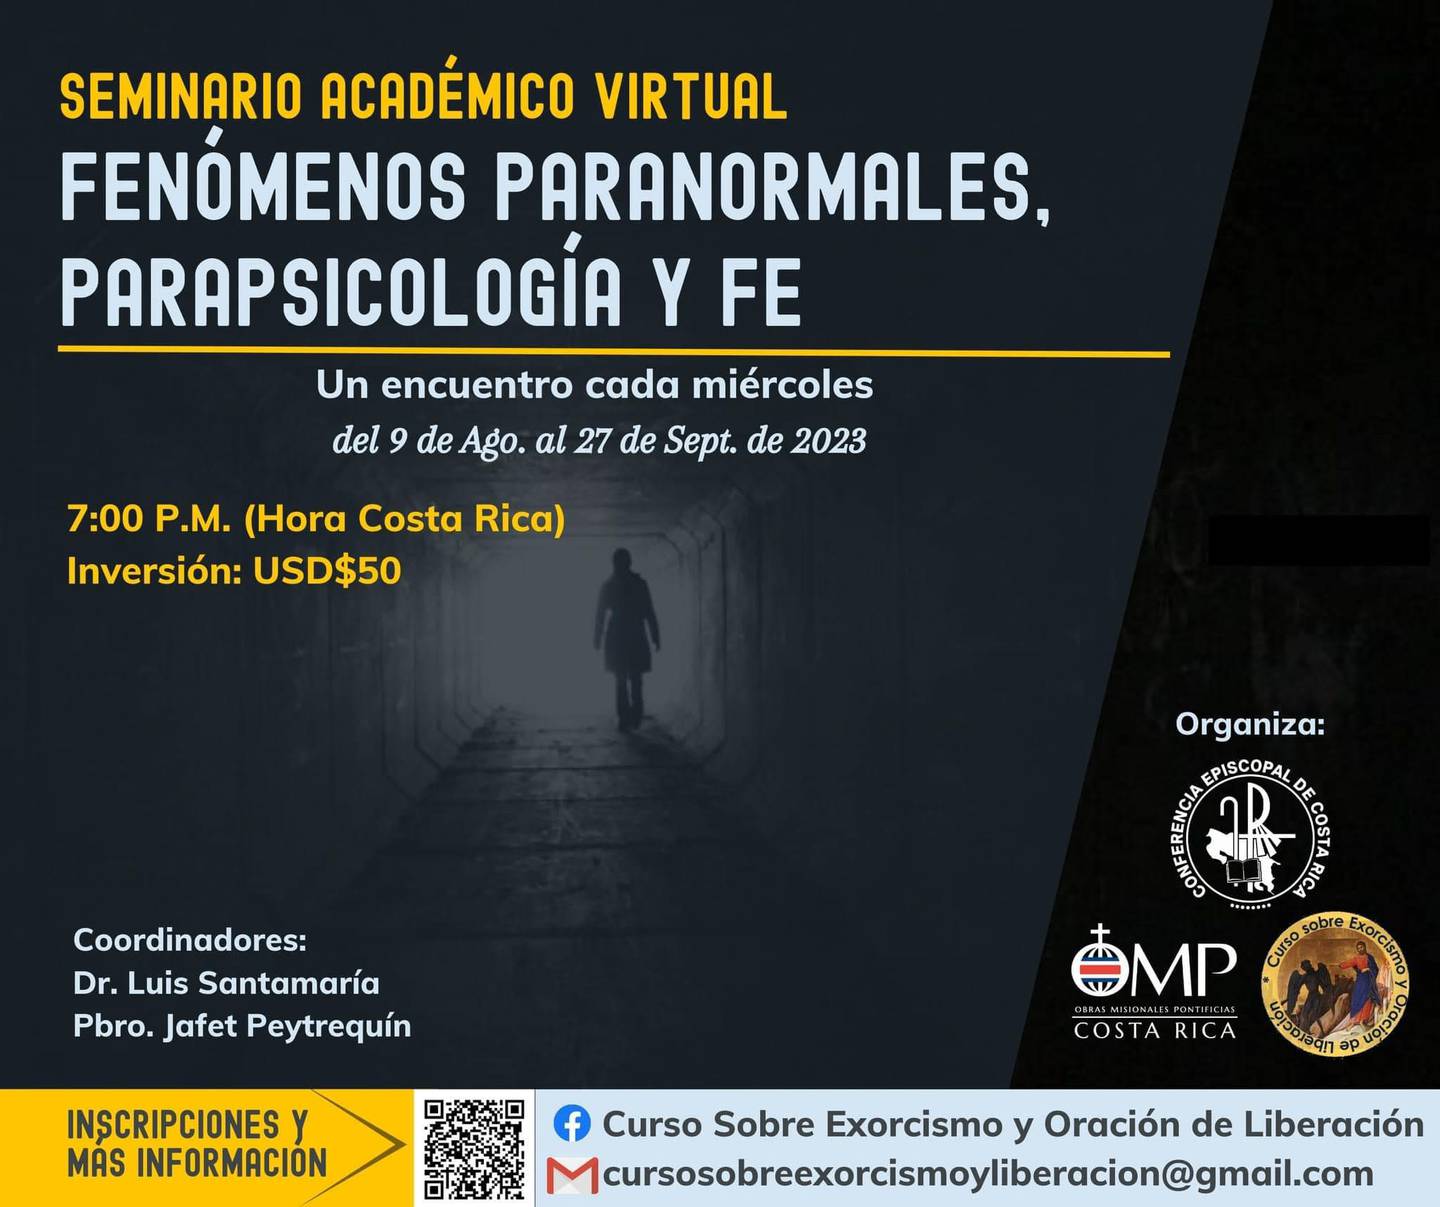 La conferencia episcopal organiza un seminario de fenómenos paranormales, parasicología y fe, que se dará virtualmente entre agosto y setiembre del 2023